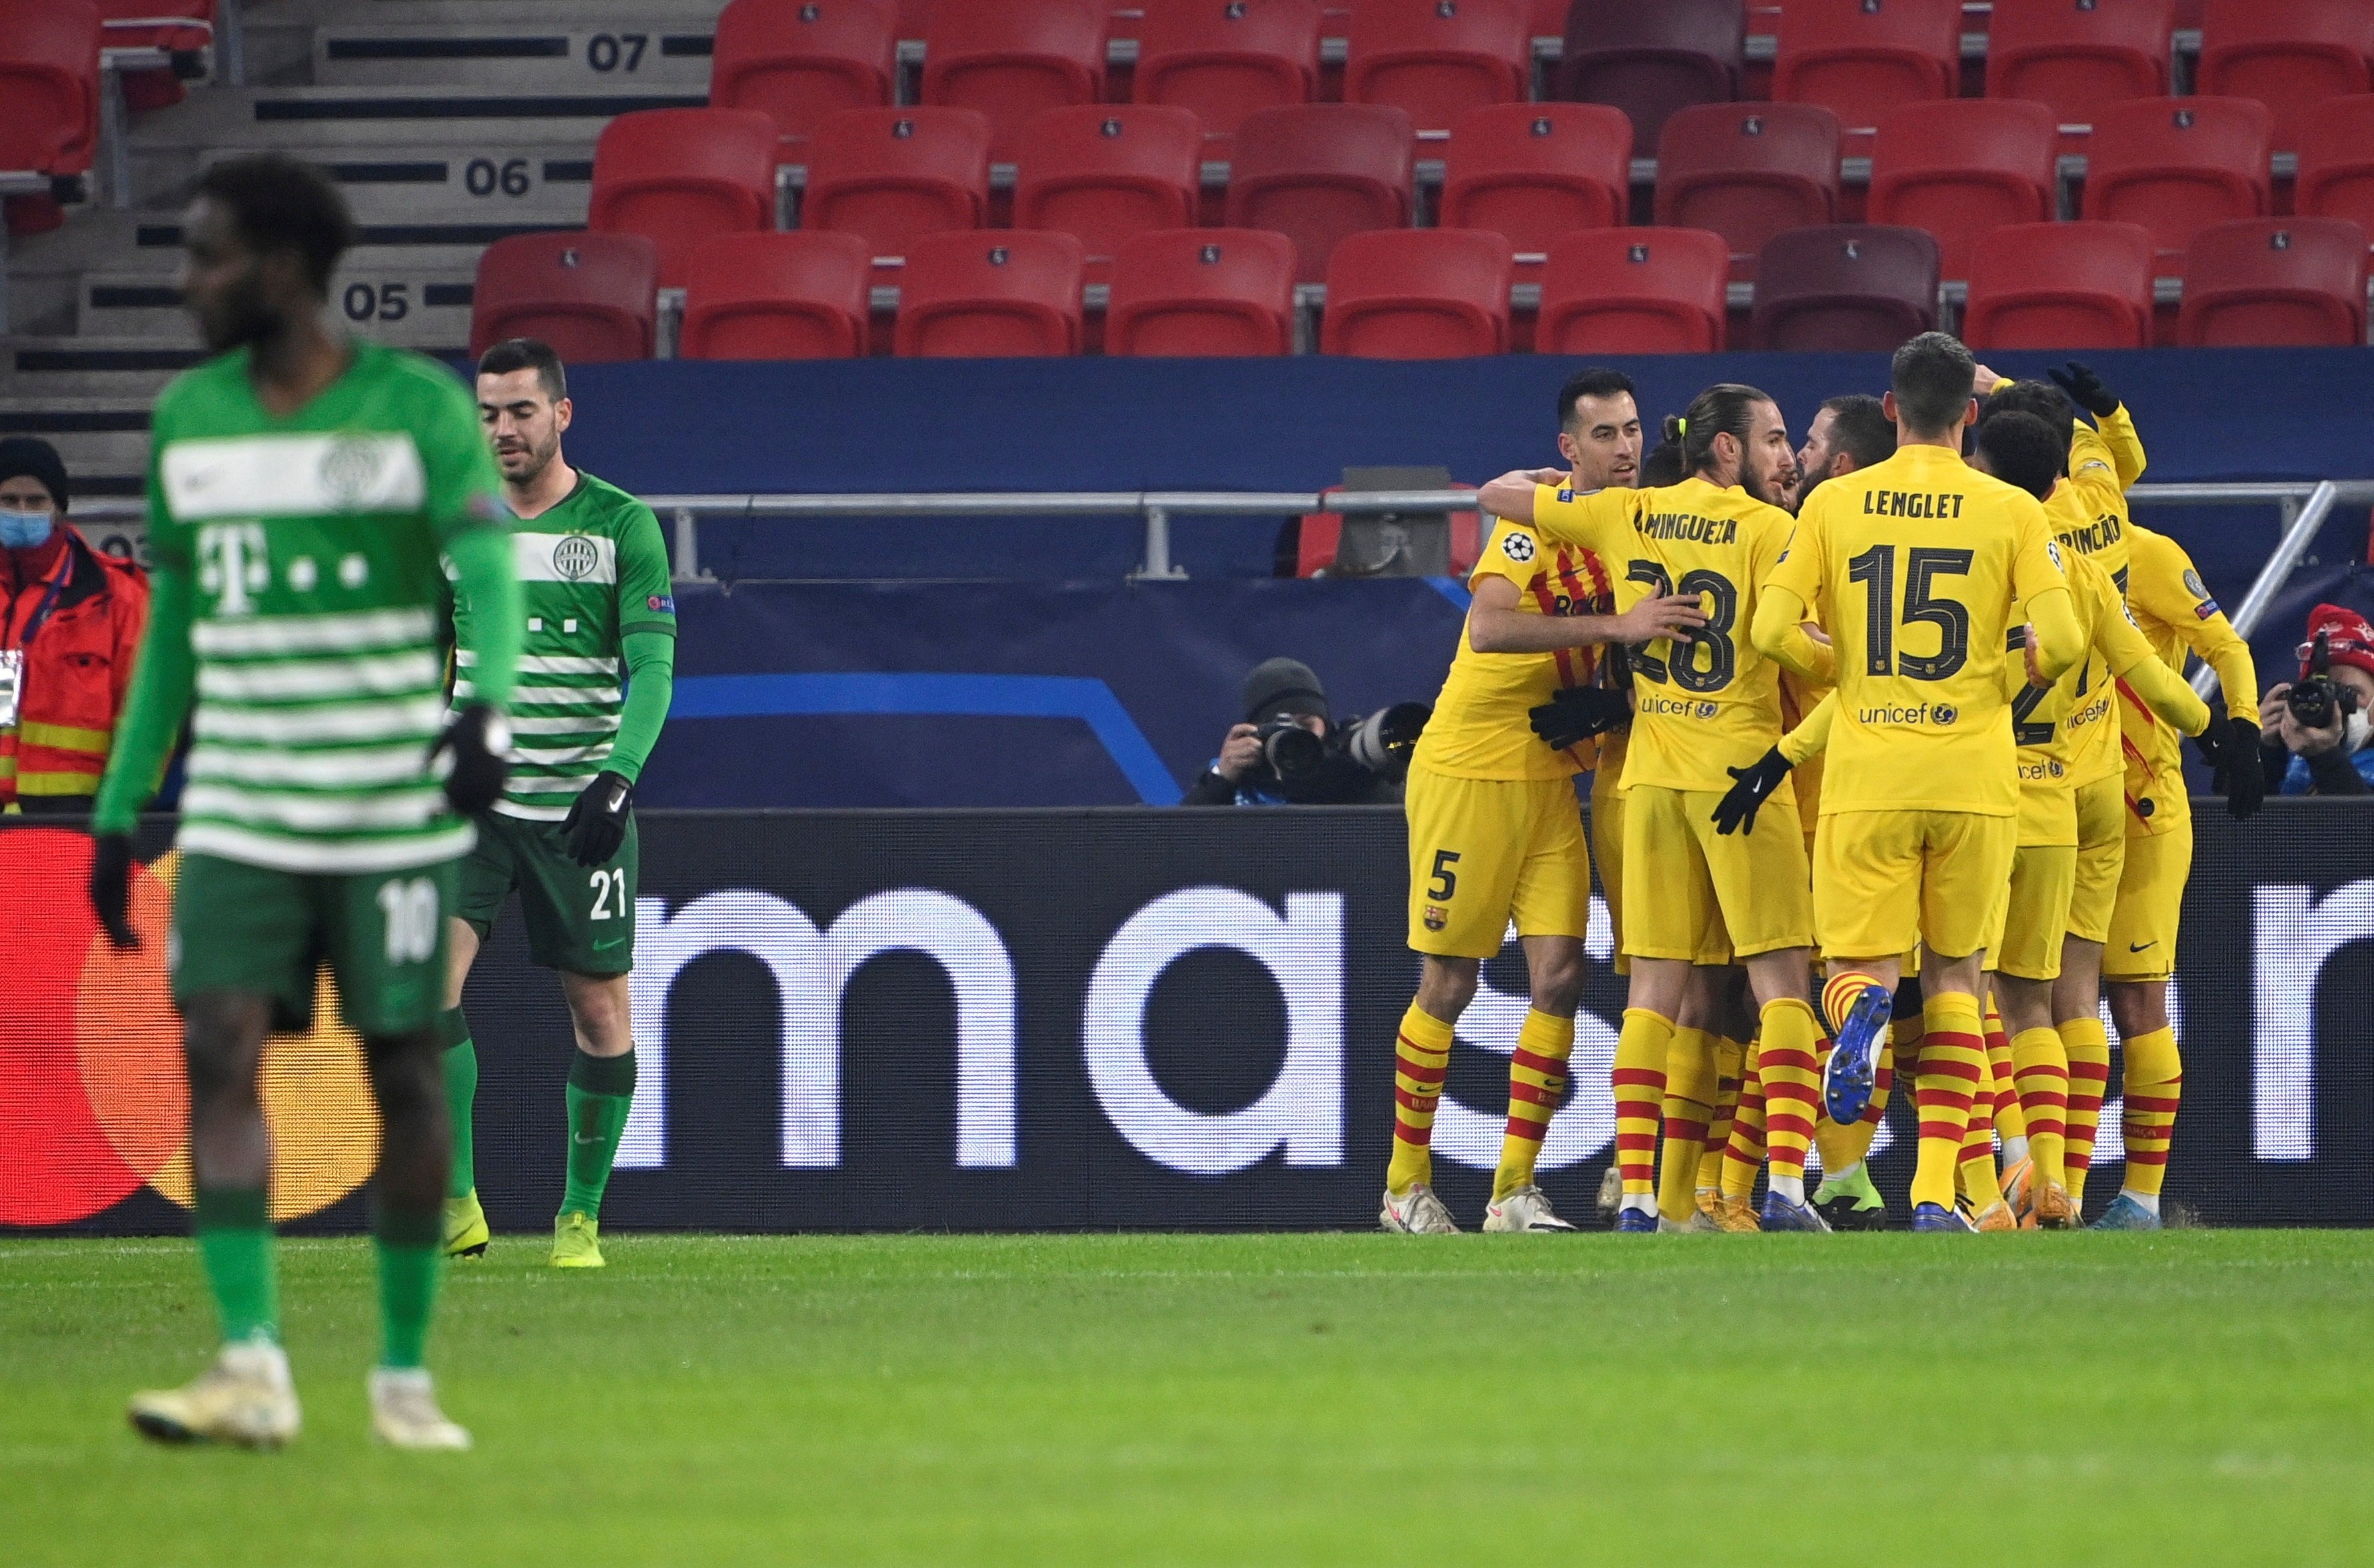 El Barça liquida al Ferencváros y se jugará el liderato contra la Juventus (0-3)